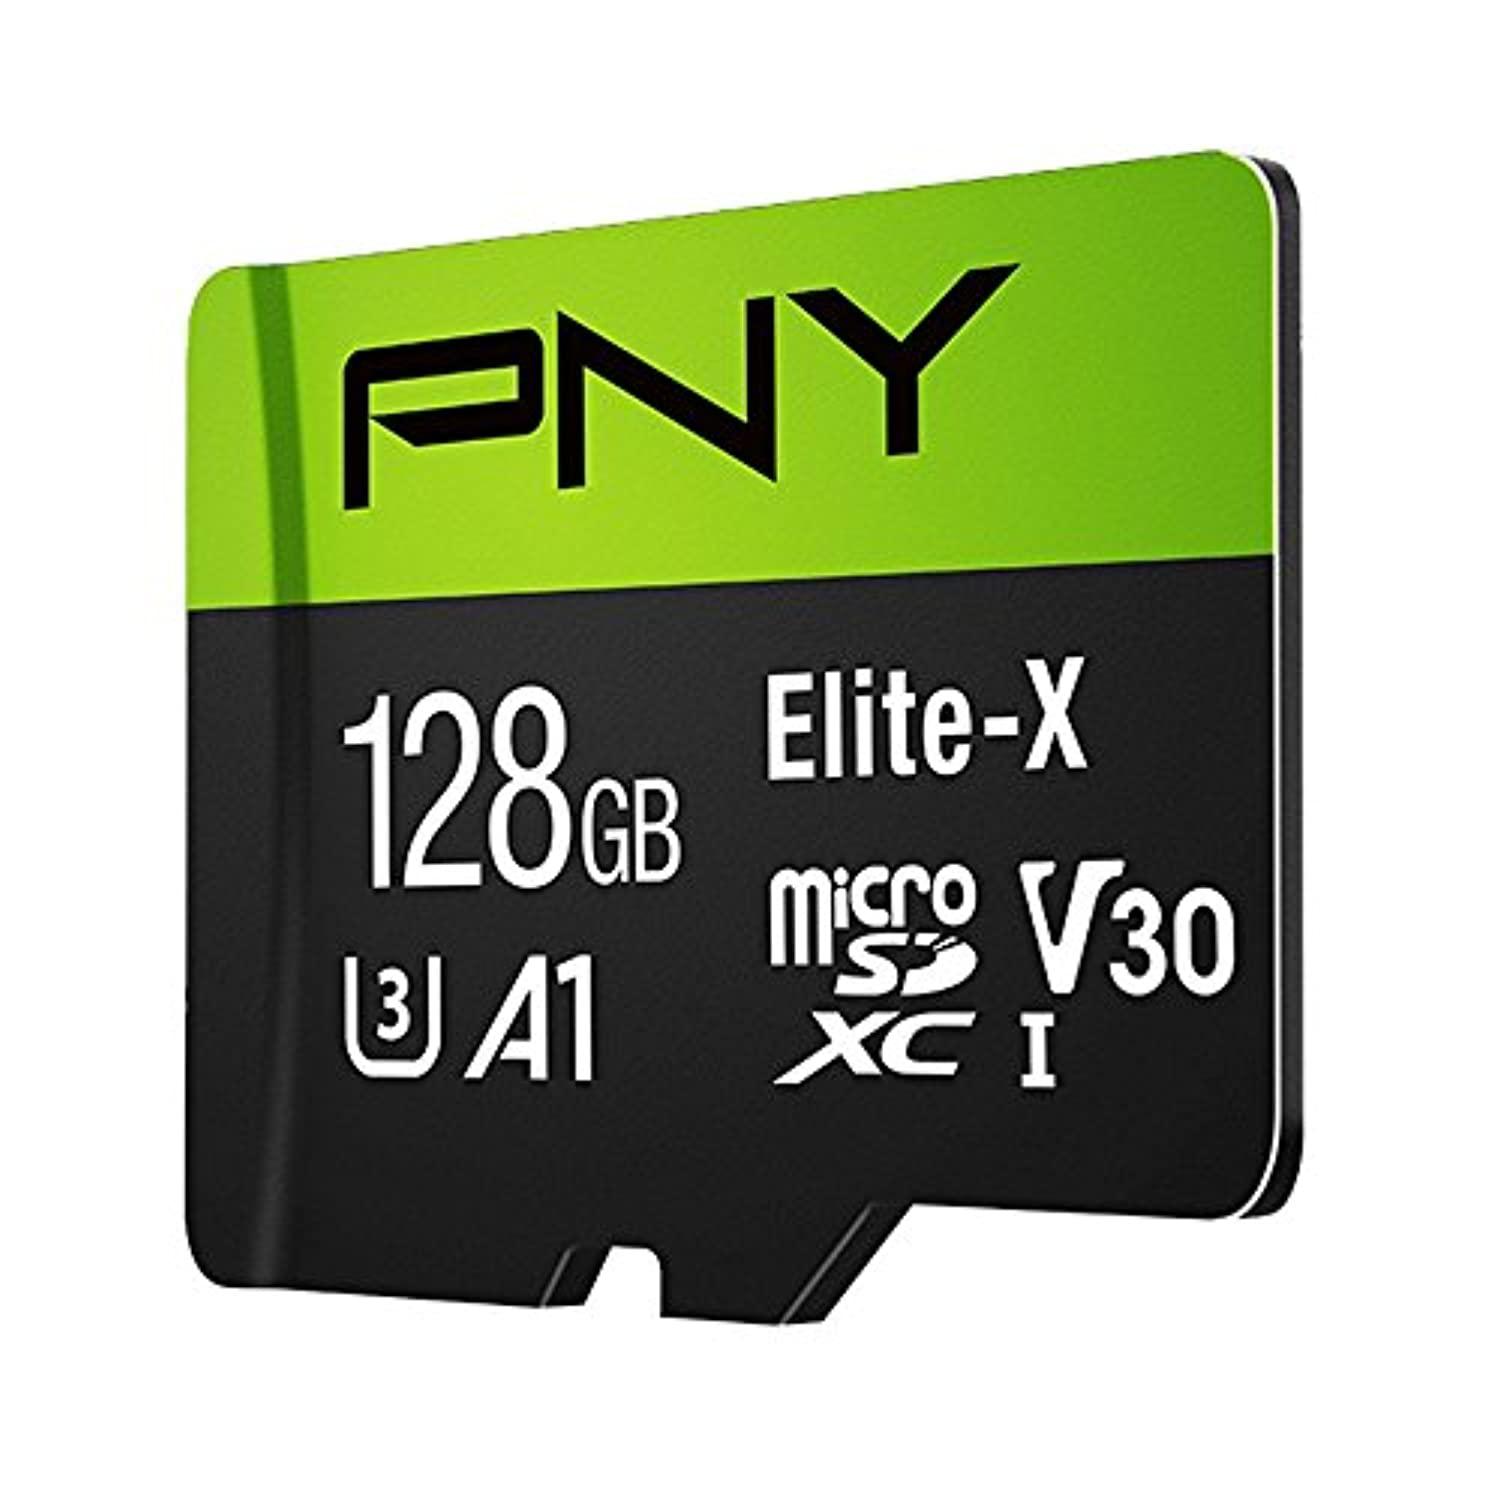 pny elite-x micro sd 128gb, u3, v30, a1, class 10, up to 100mb/s - p-sdu128u3100ex-ge